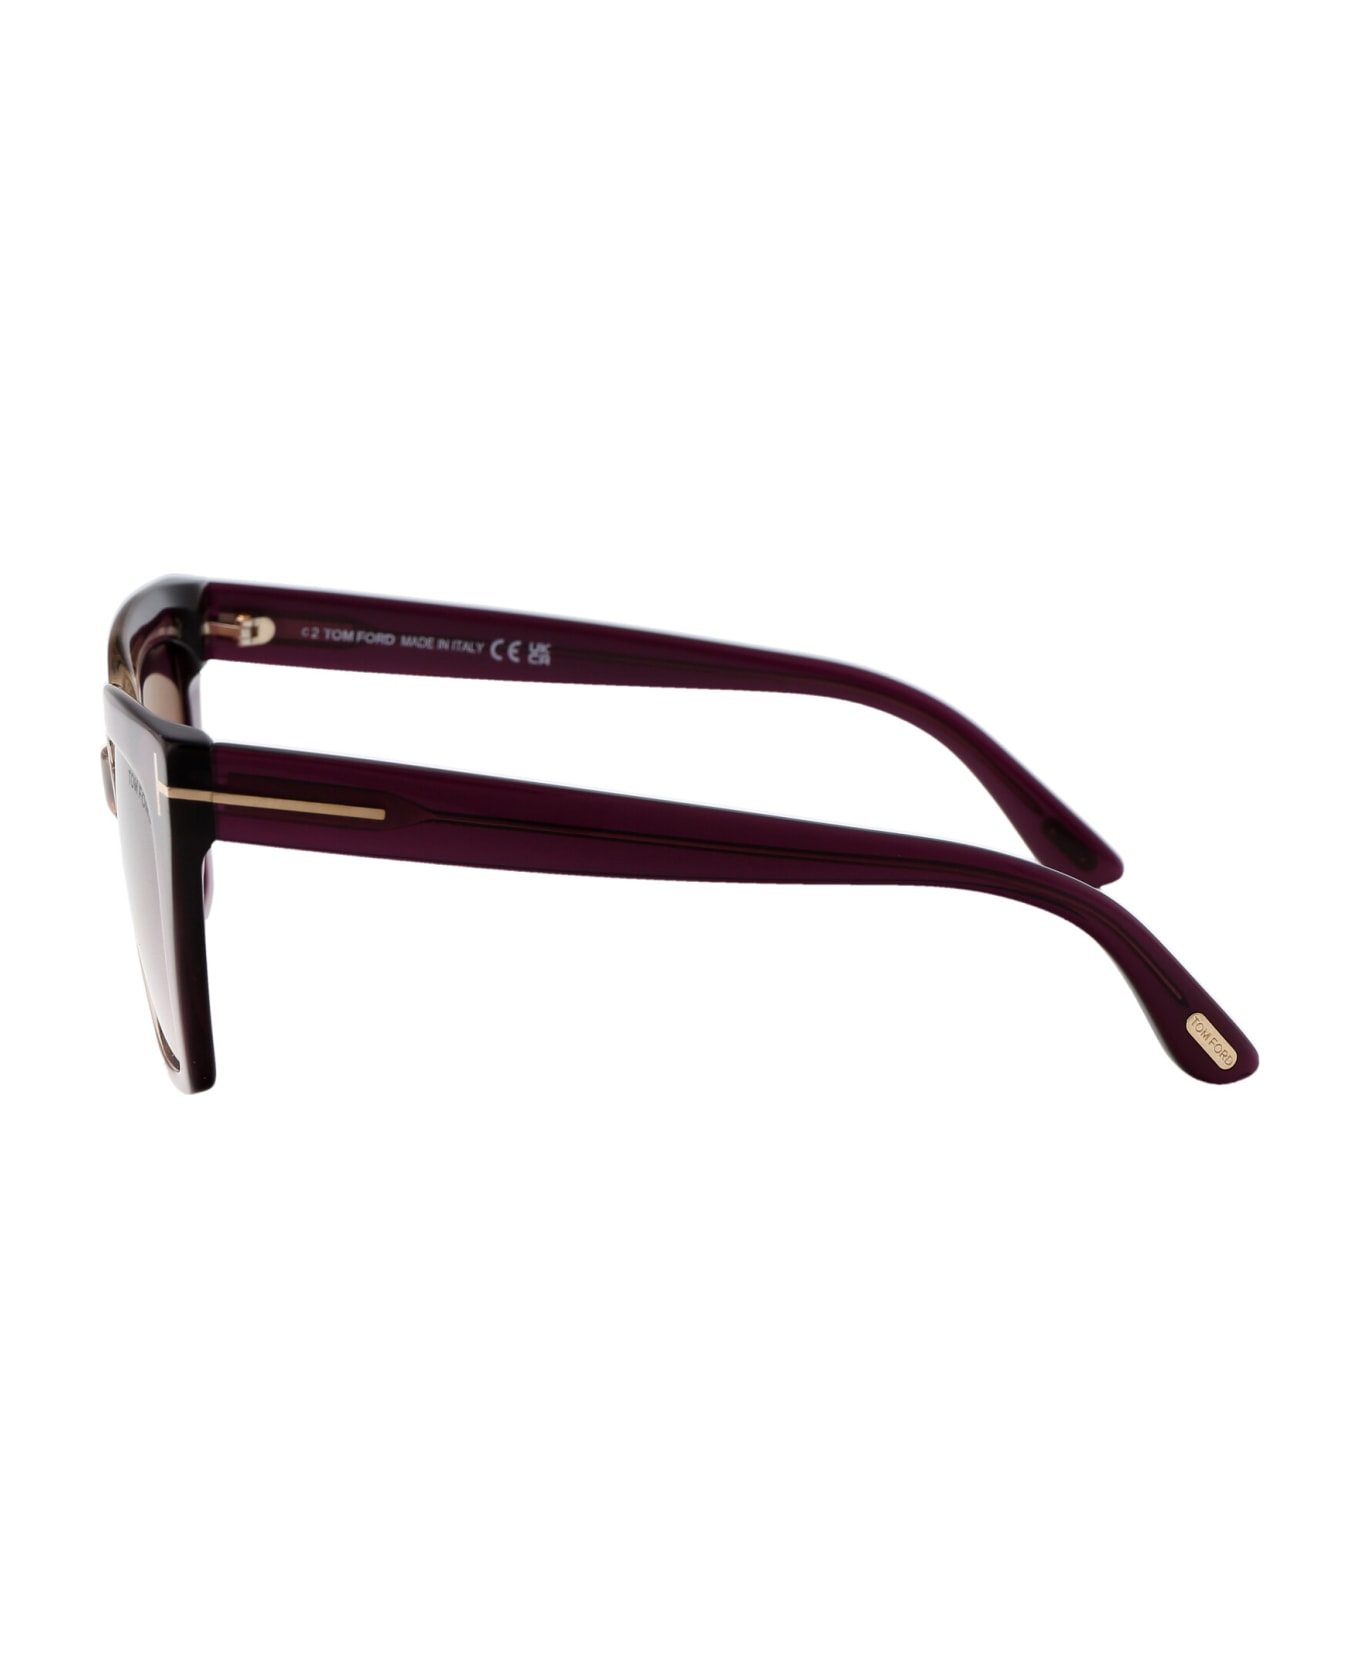 Tom Ford Eyewear Winona Sunglasses - 83Z Viola/Altro / Viola Grad E/O Specchiato